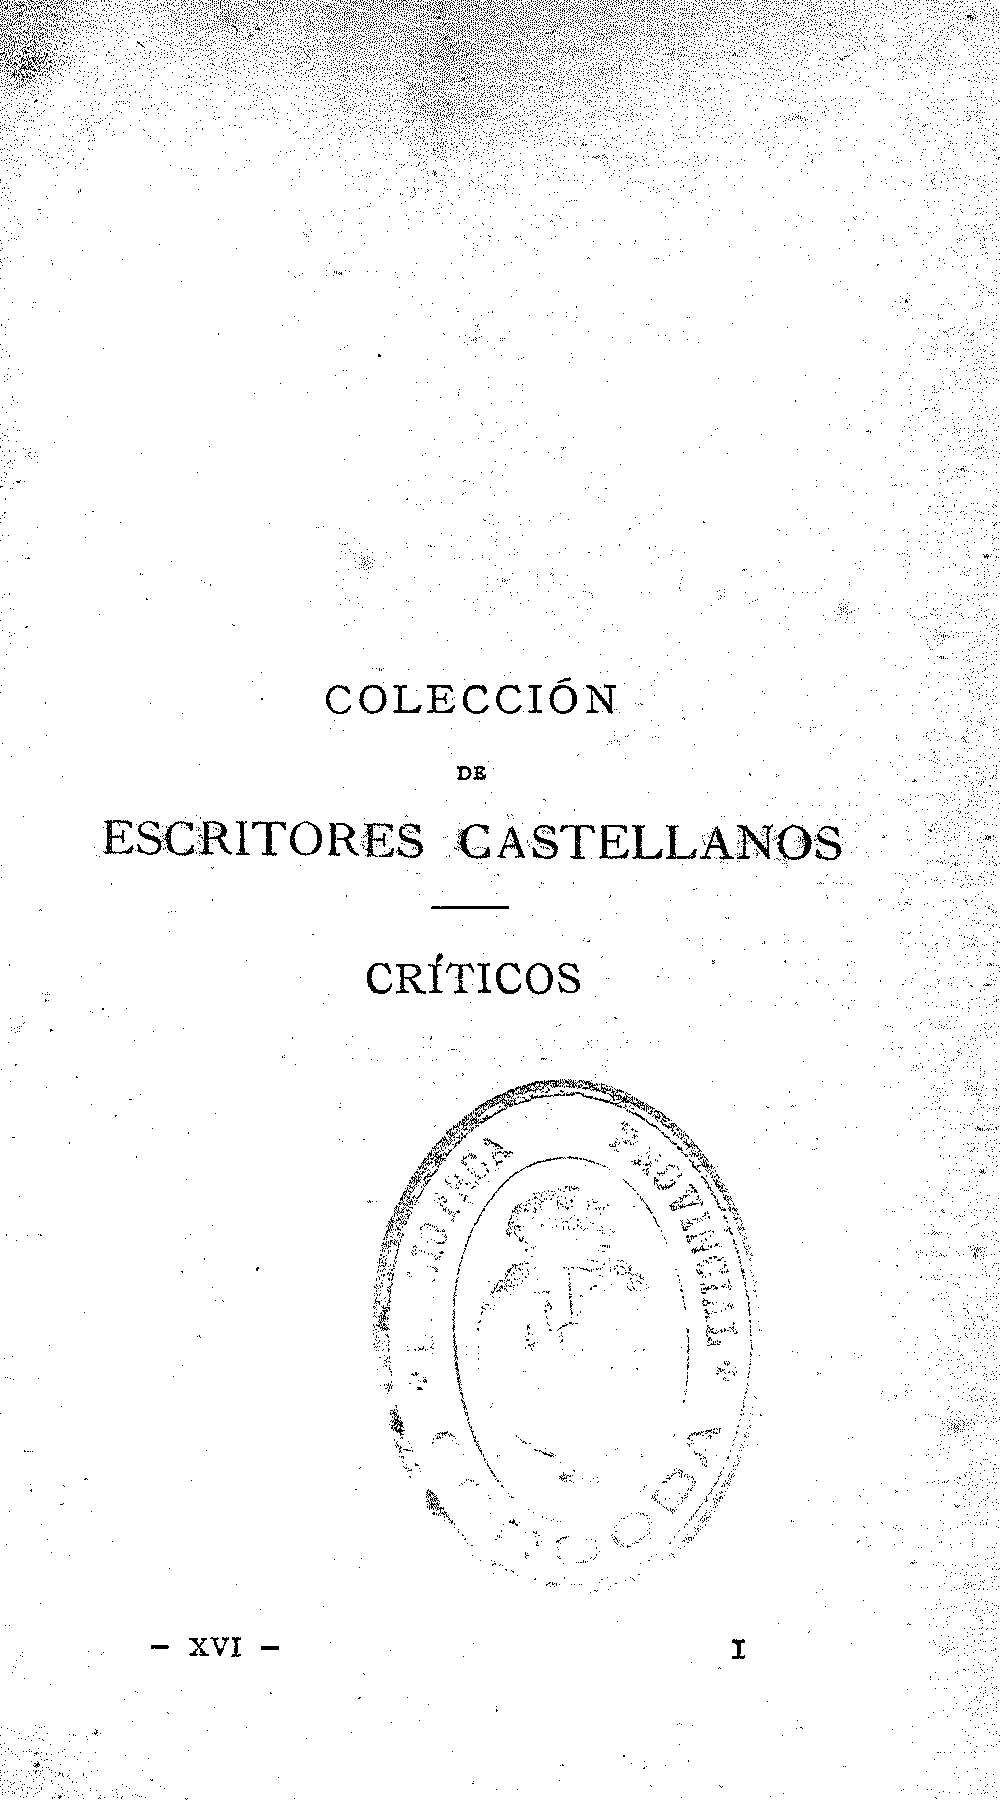 Colección de escritores castellanos. Críticos